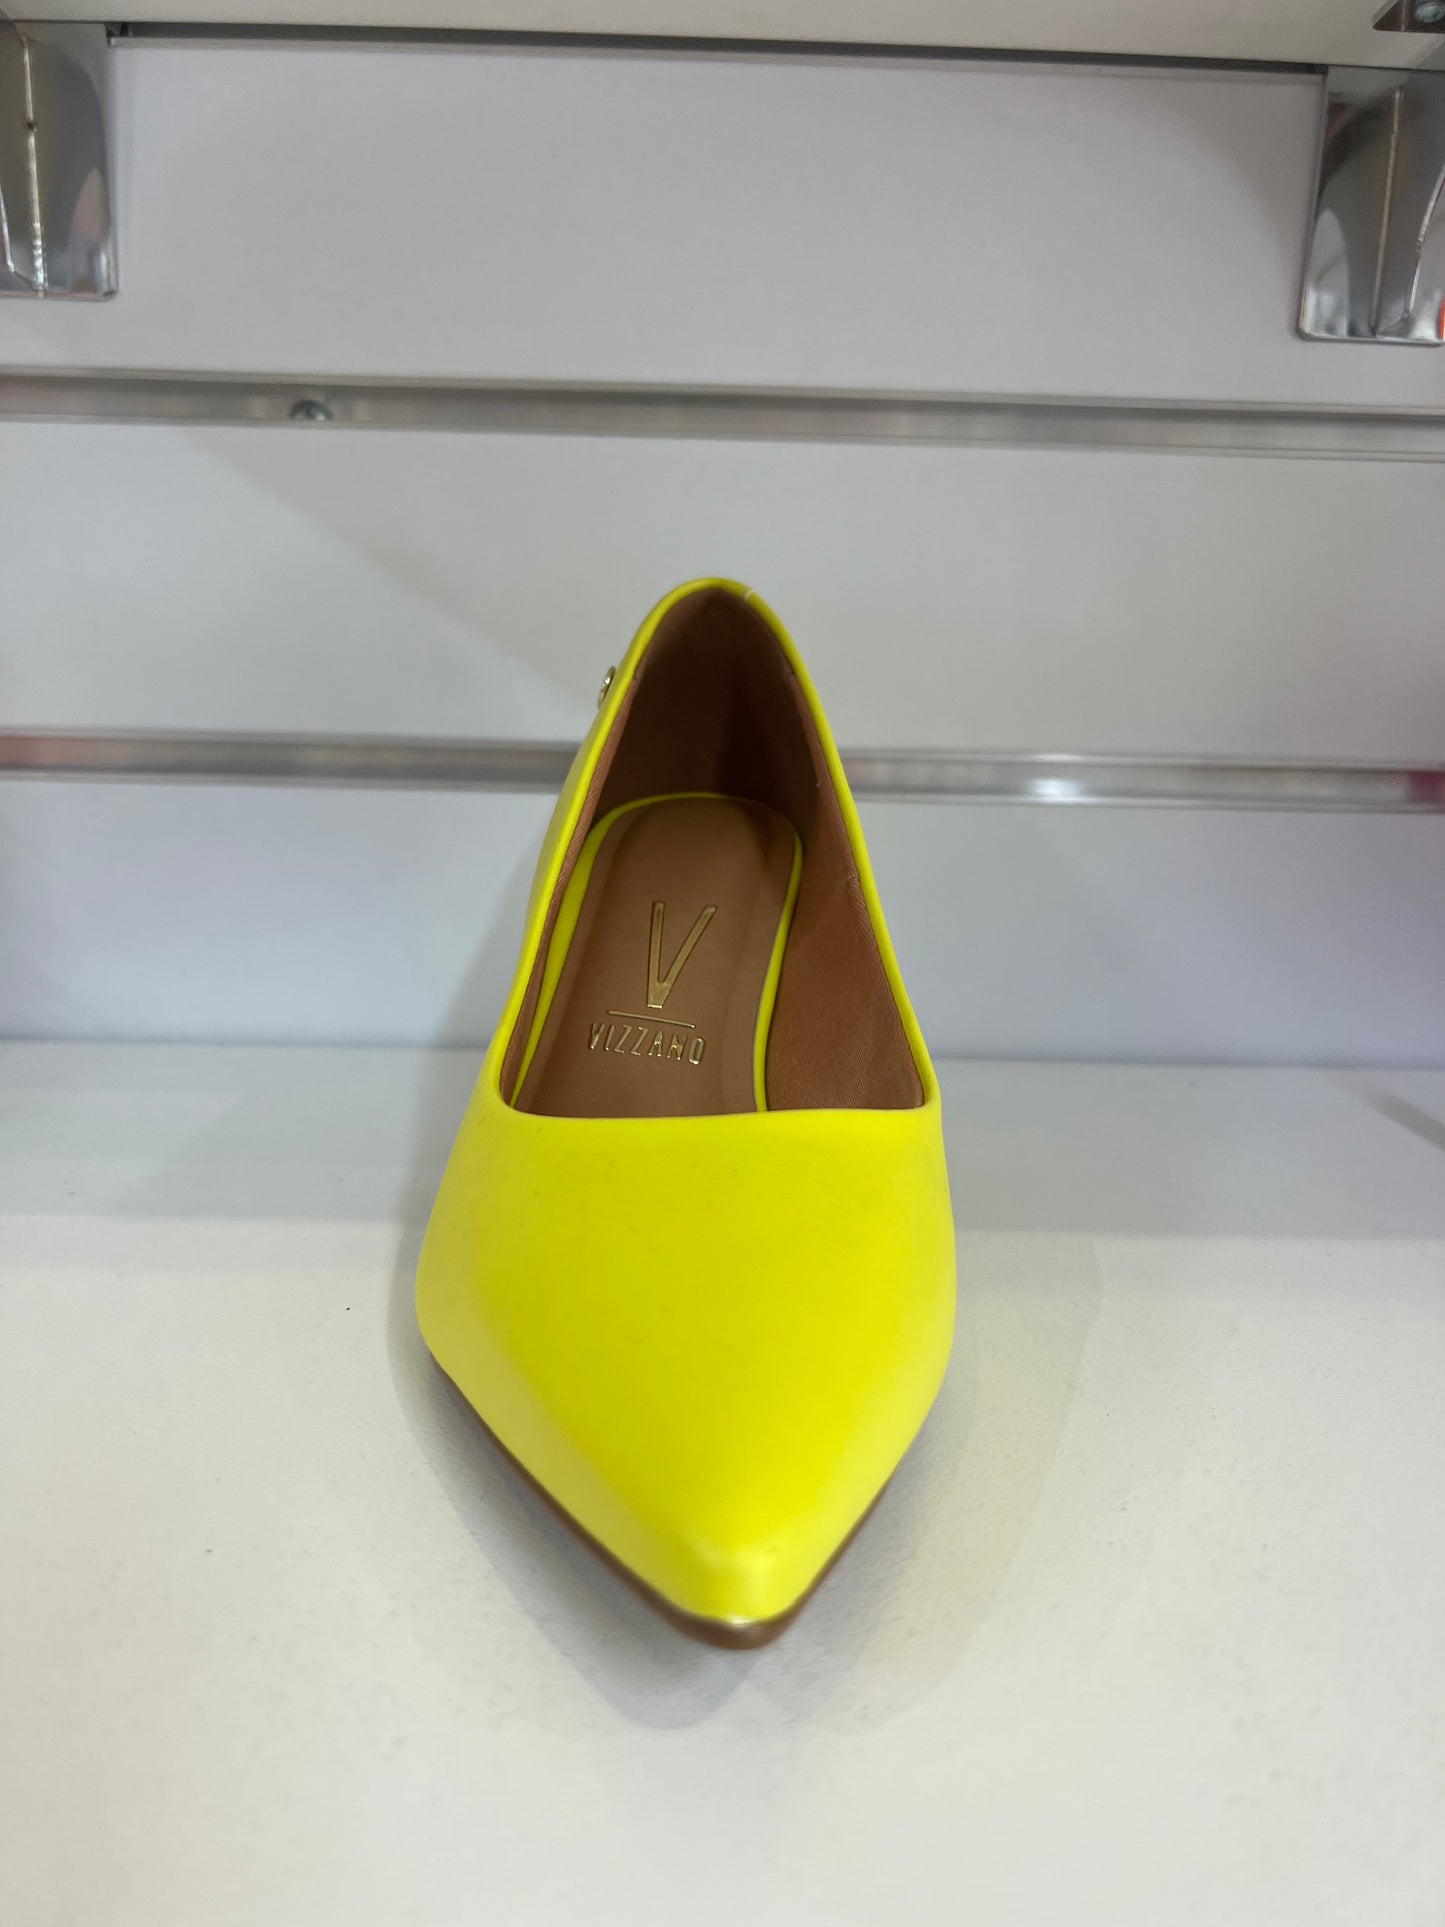 NELLA VIZZANO PUMP - VIZZANO - 10, 11, 5, 6, 7, 8, 9, BF, BLACK, fuchsia, hot pink, mustard, pump, sicilian, stiletto, stiletto heel, WHITE, womens footwear, yellow - Stomp Shoes Darwin